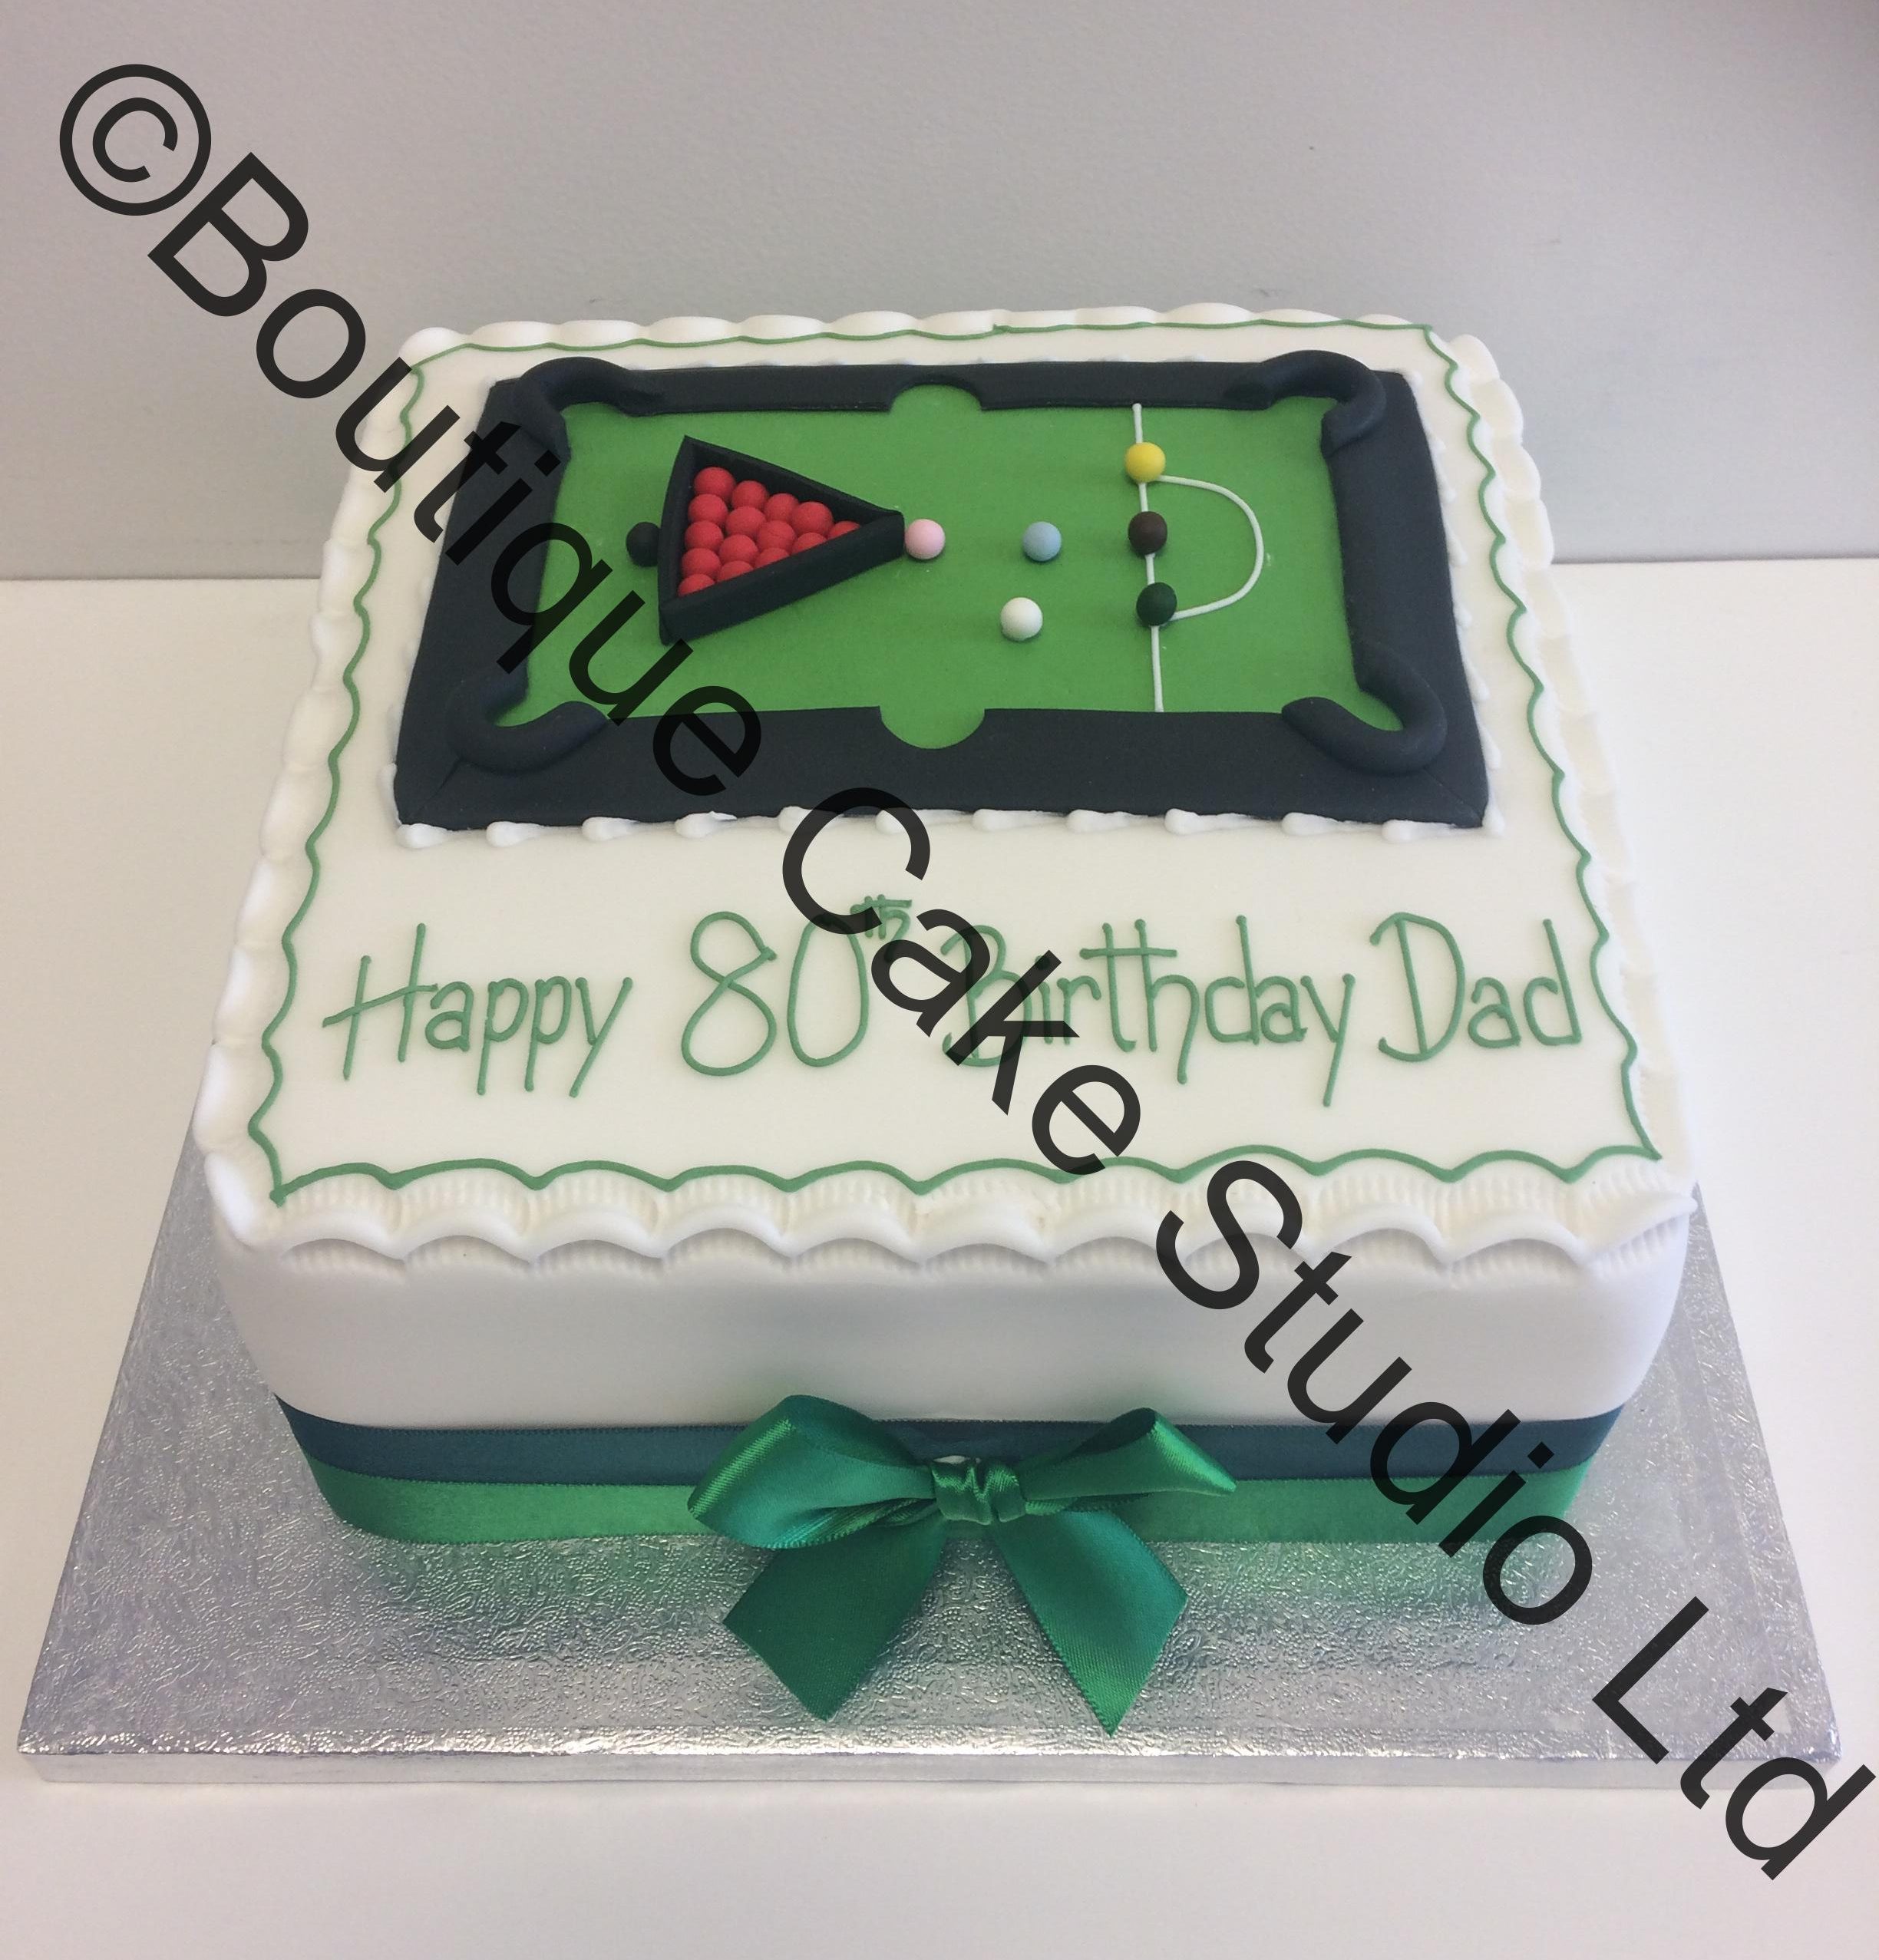 Snooker themed cake